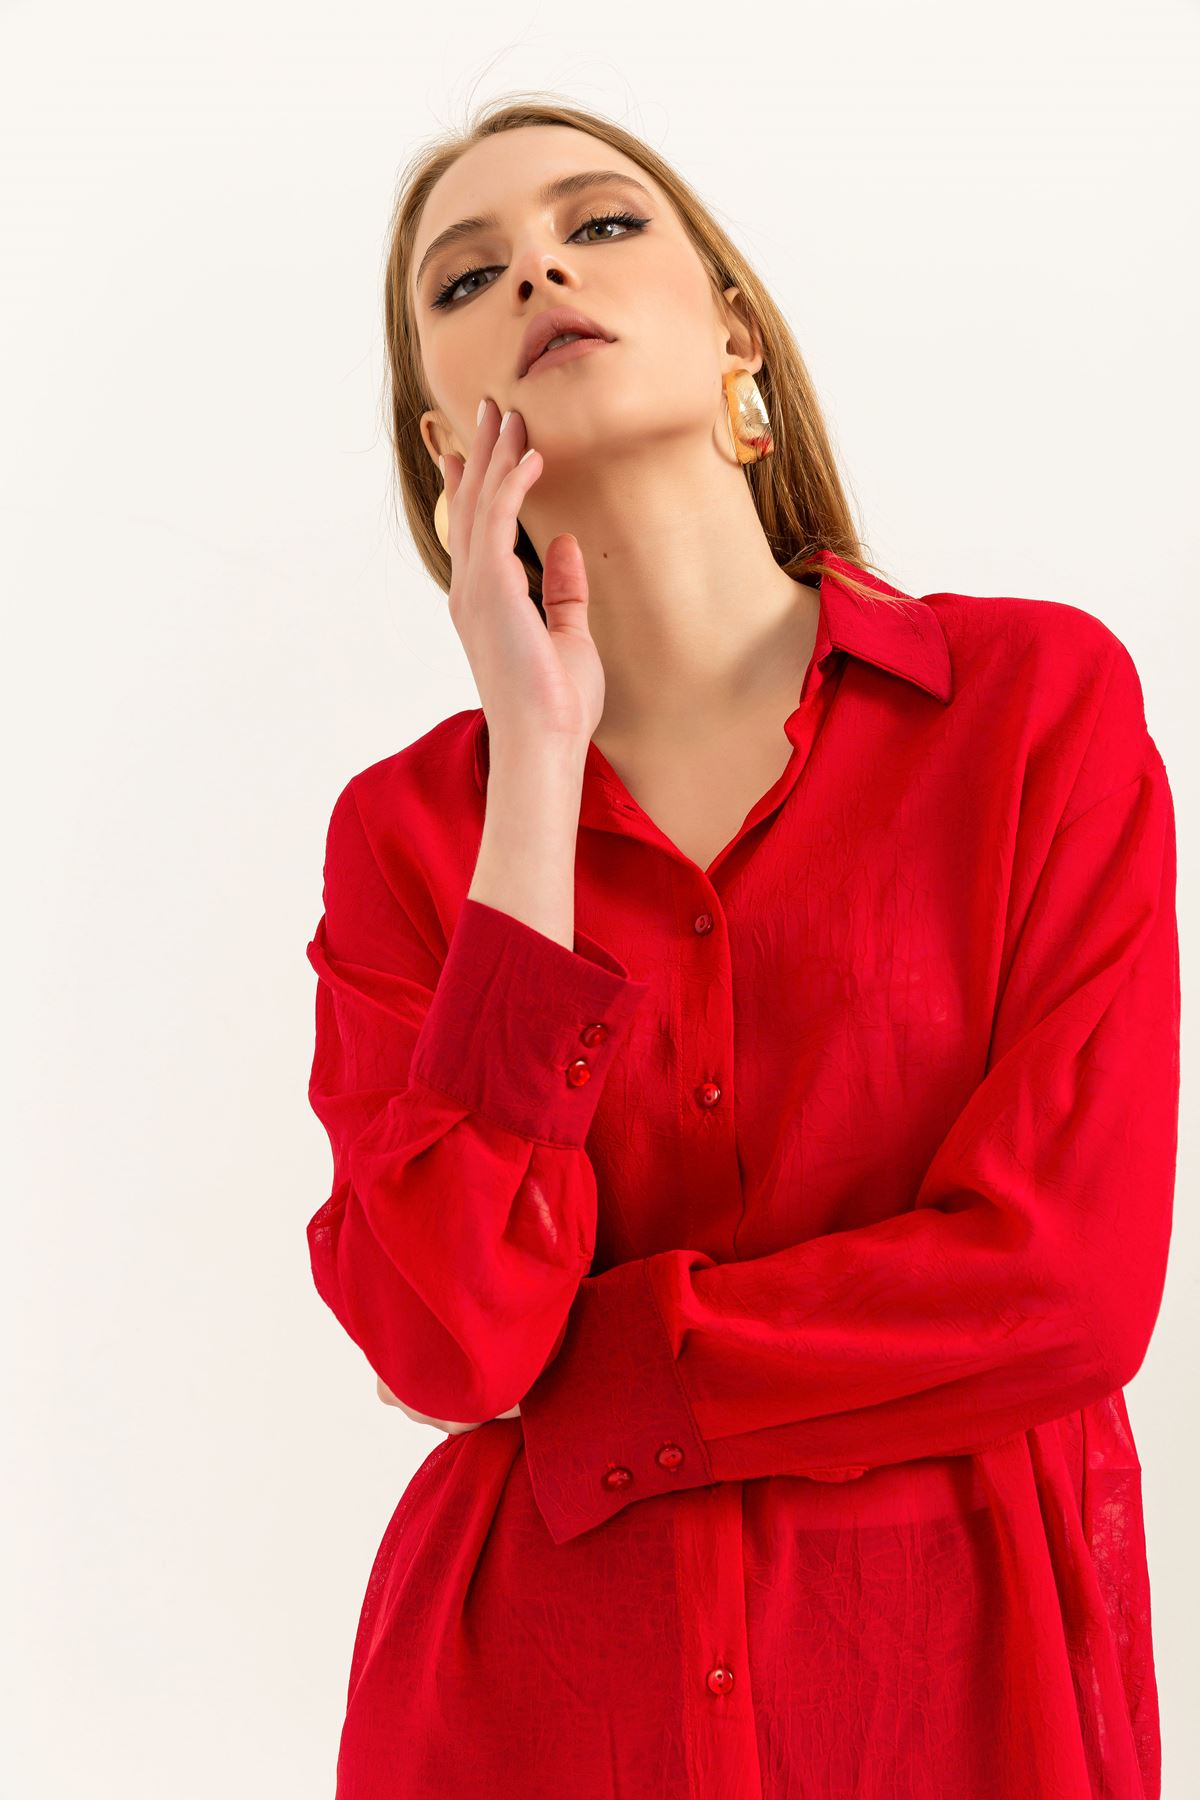 шифон ткань длинный рукав оверсайз женская рубашка-Kрасный